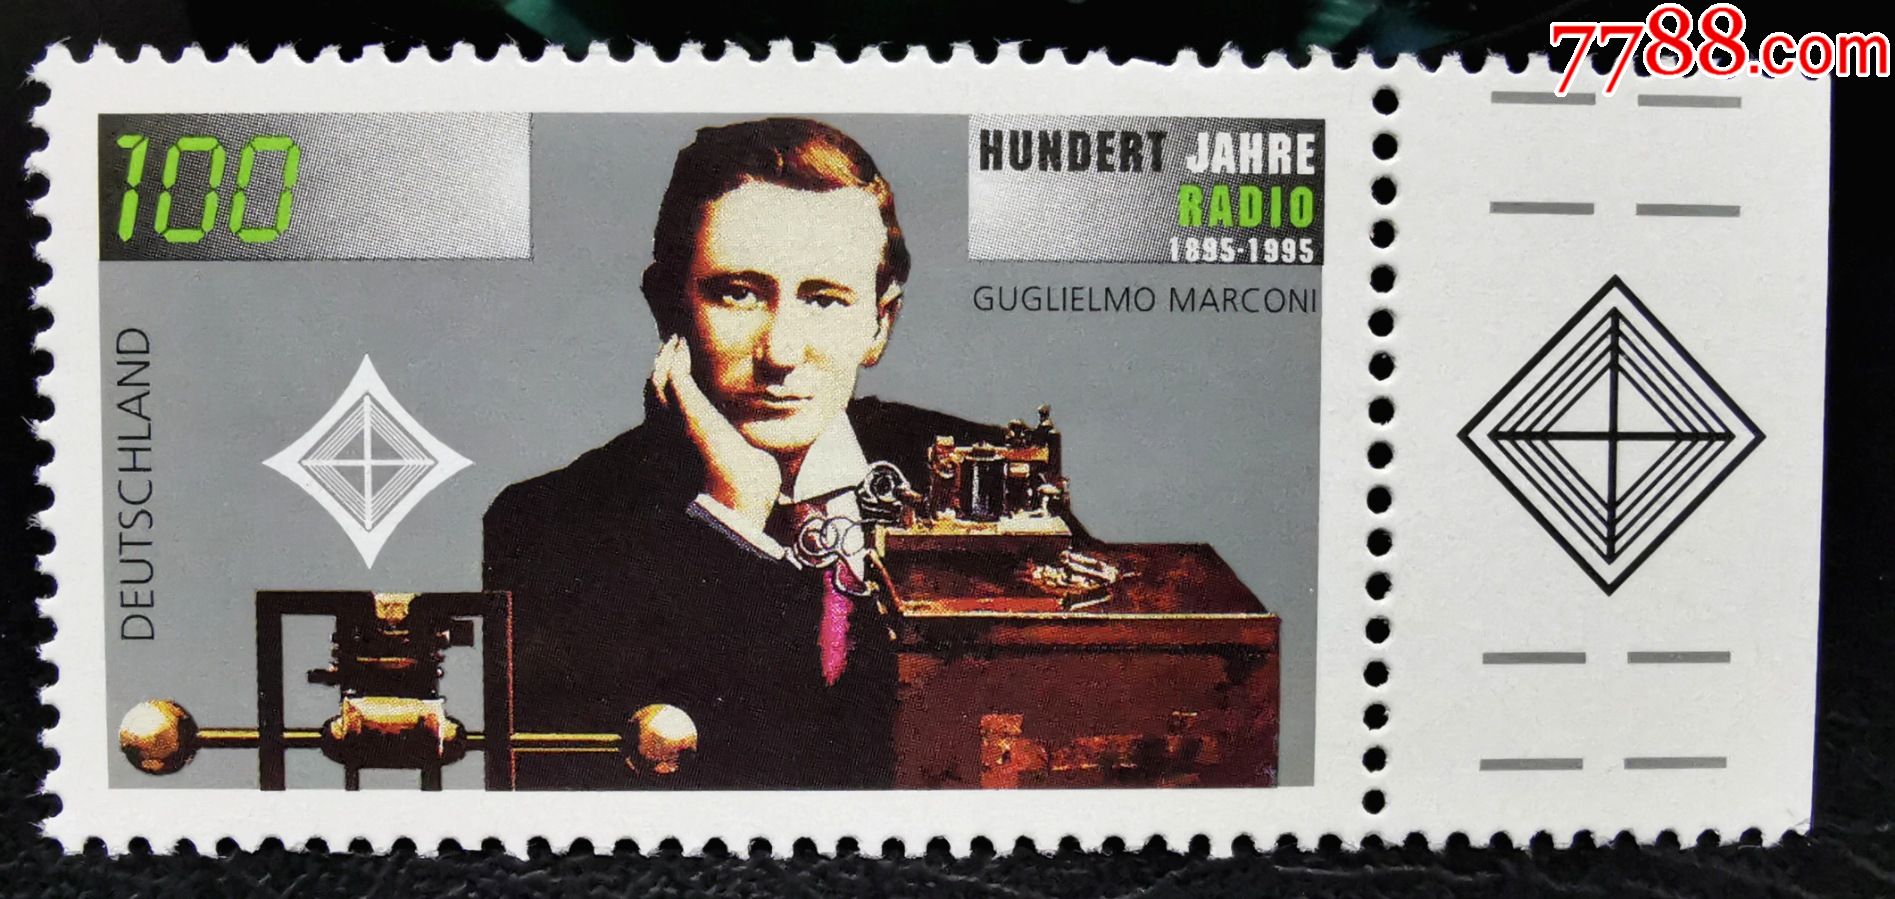 6a德国1995年邮票诺贝尔物理奖无线电发明者马可尼名人1全新